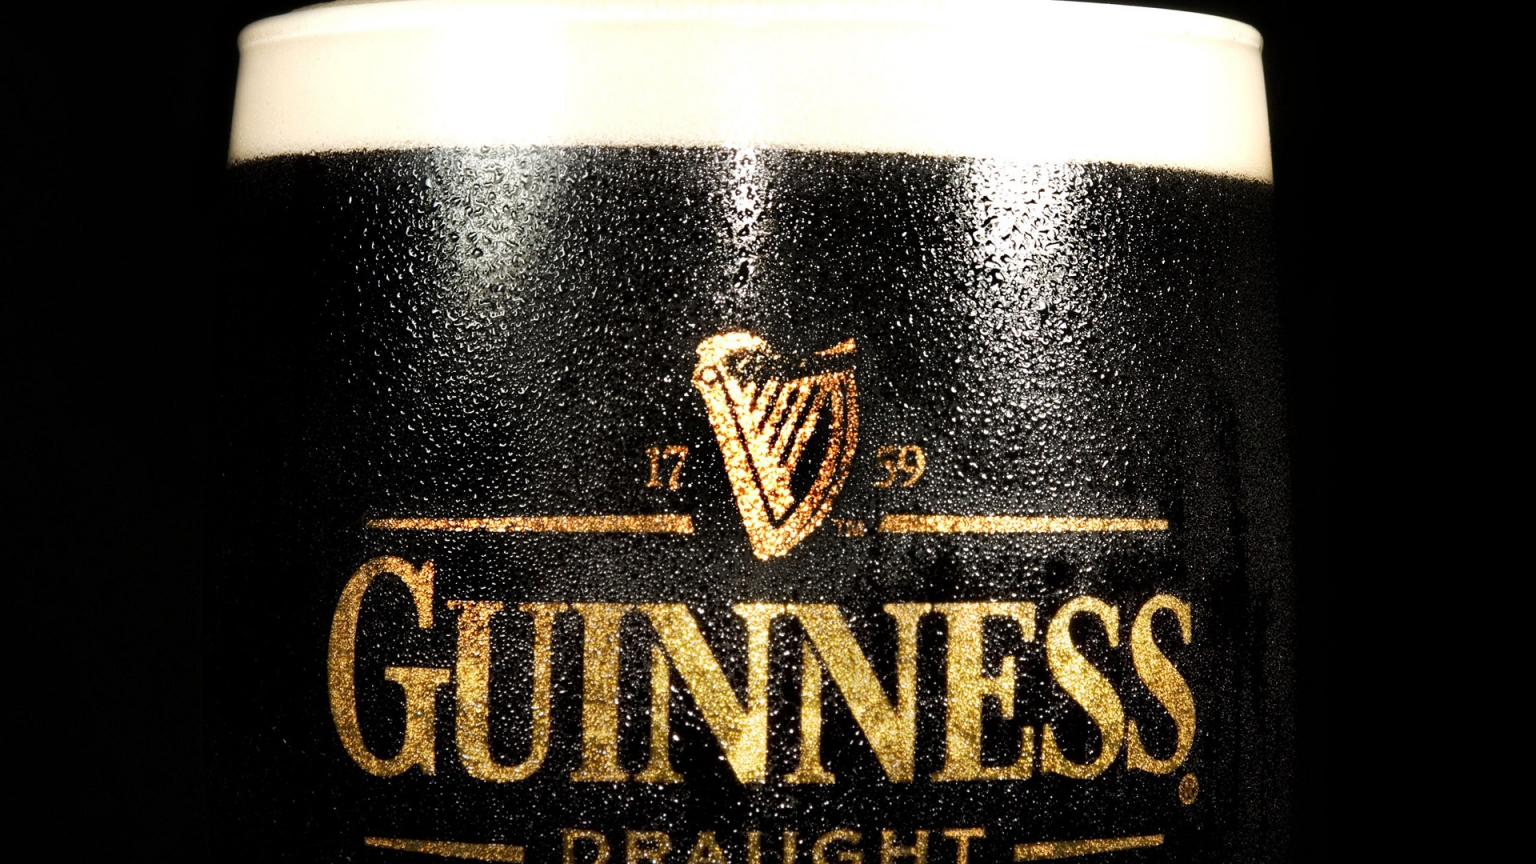 Guinness Draught for 1536 x 864 HDTV resolution